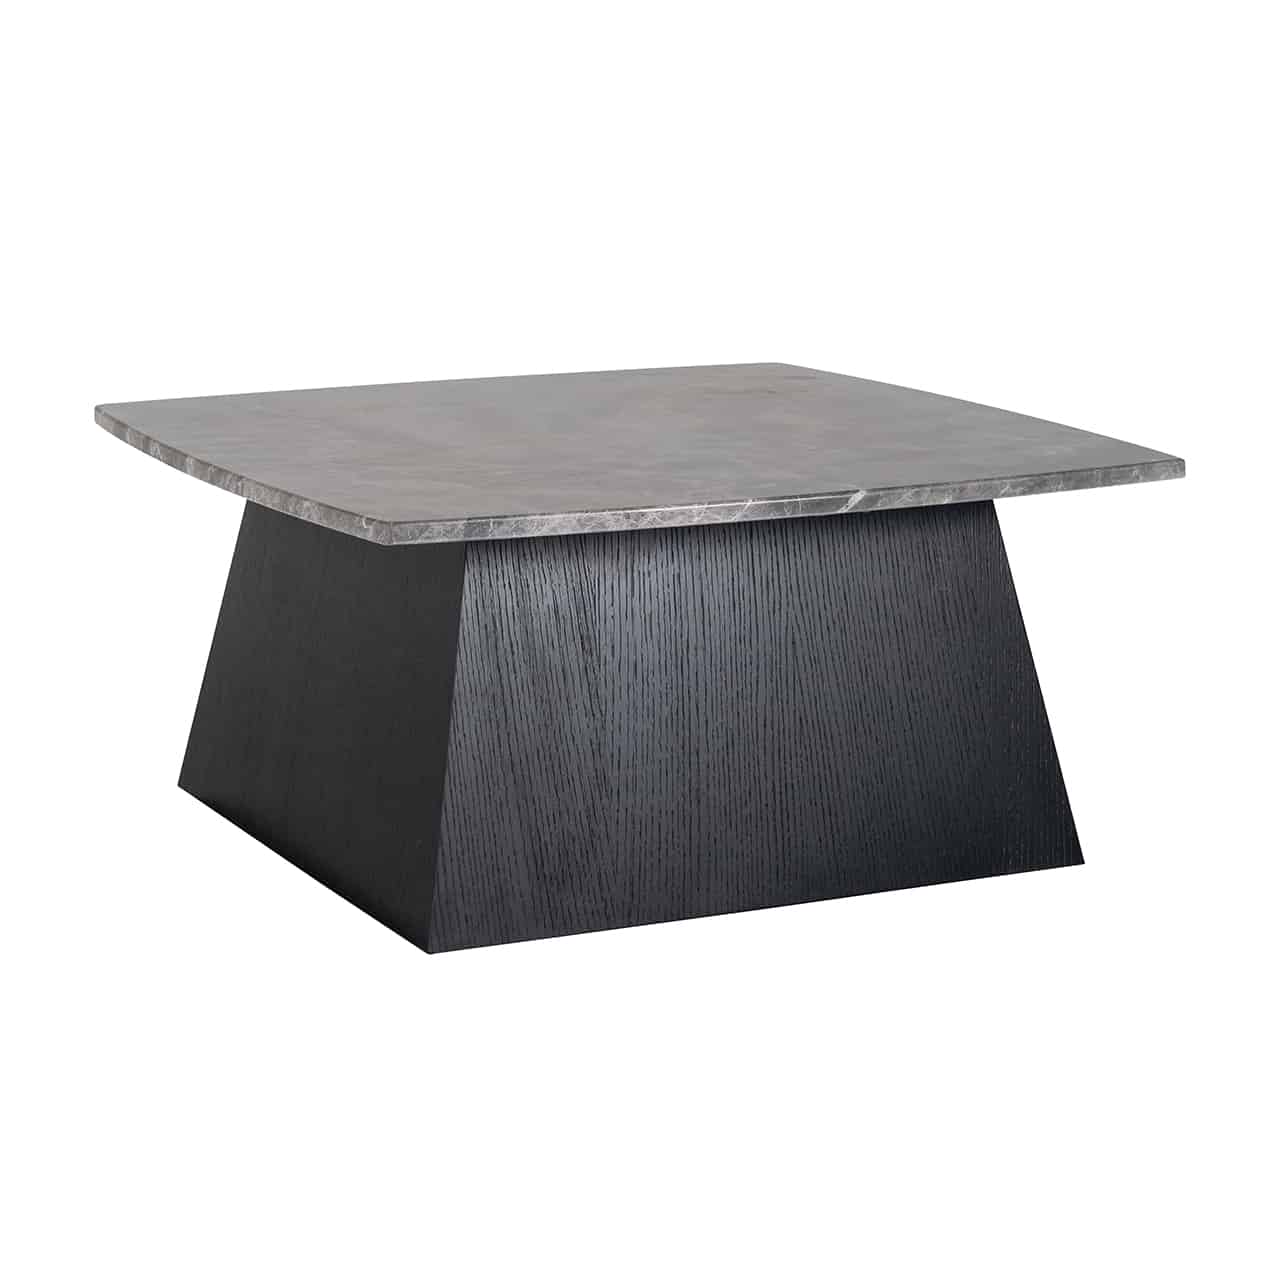 Couchtisch schwarz; auf einem quaderförmigen Block, der sich nach onen leicht verjüngt liegt eine quadratische, marmorierte Platte, deren Seiten leicht gebogen sind.